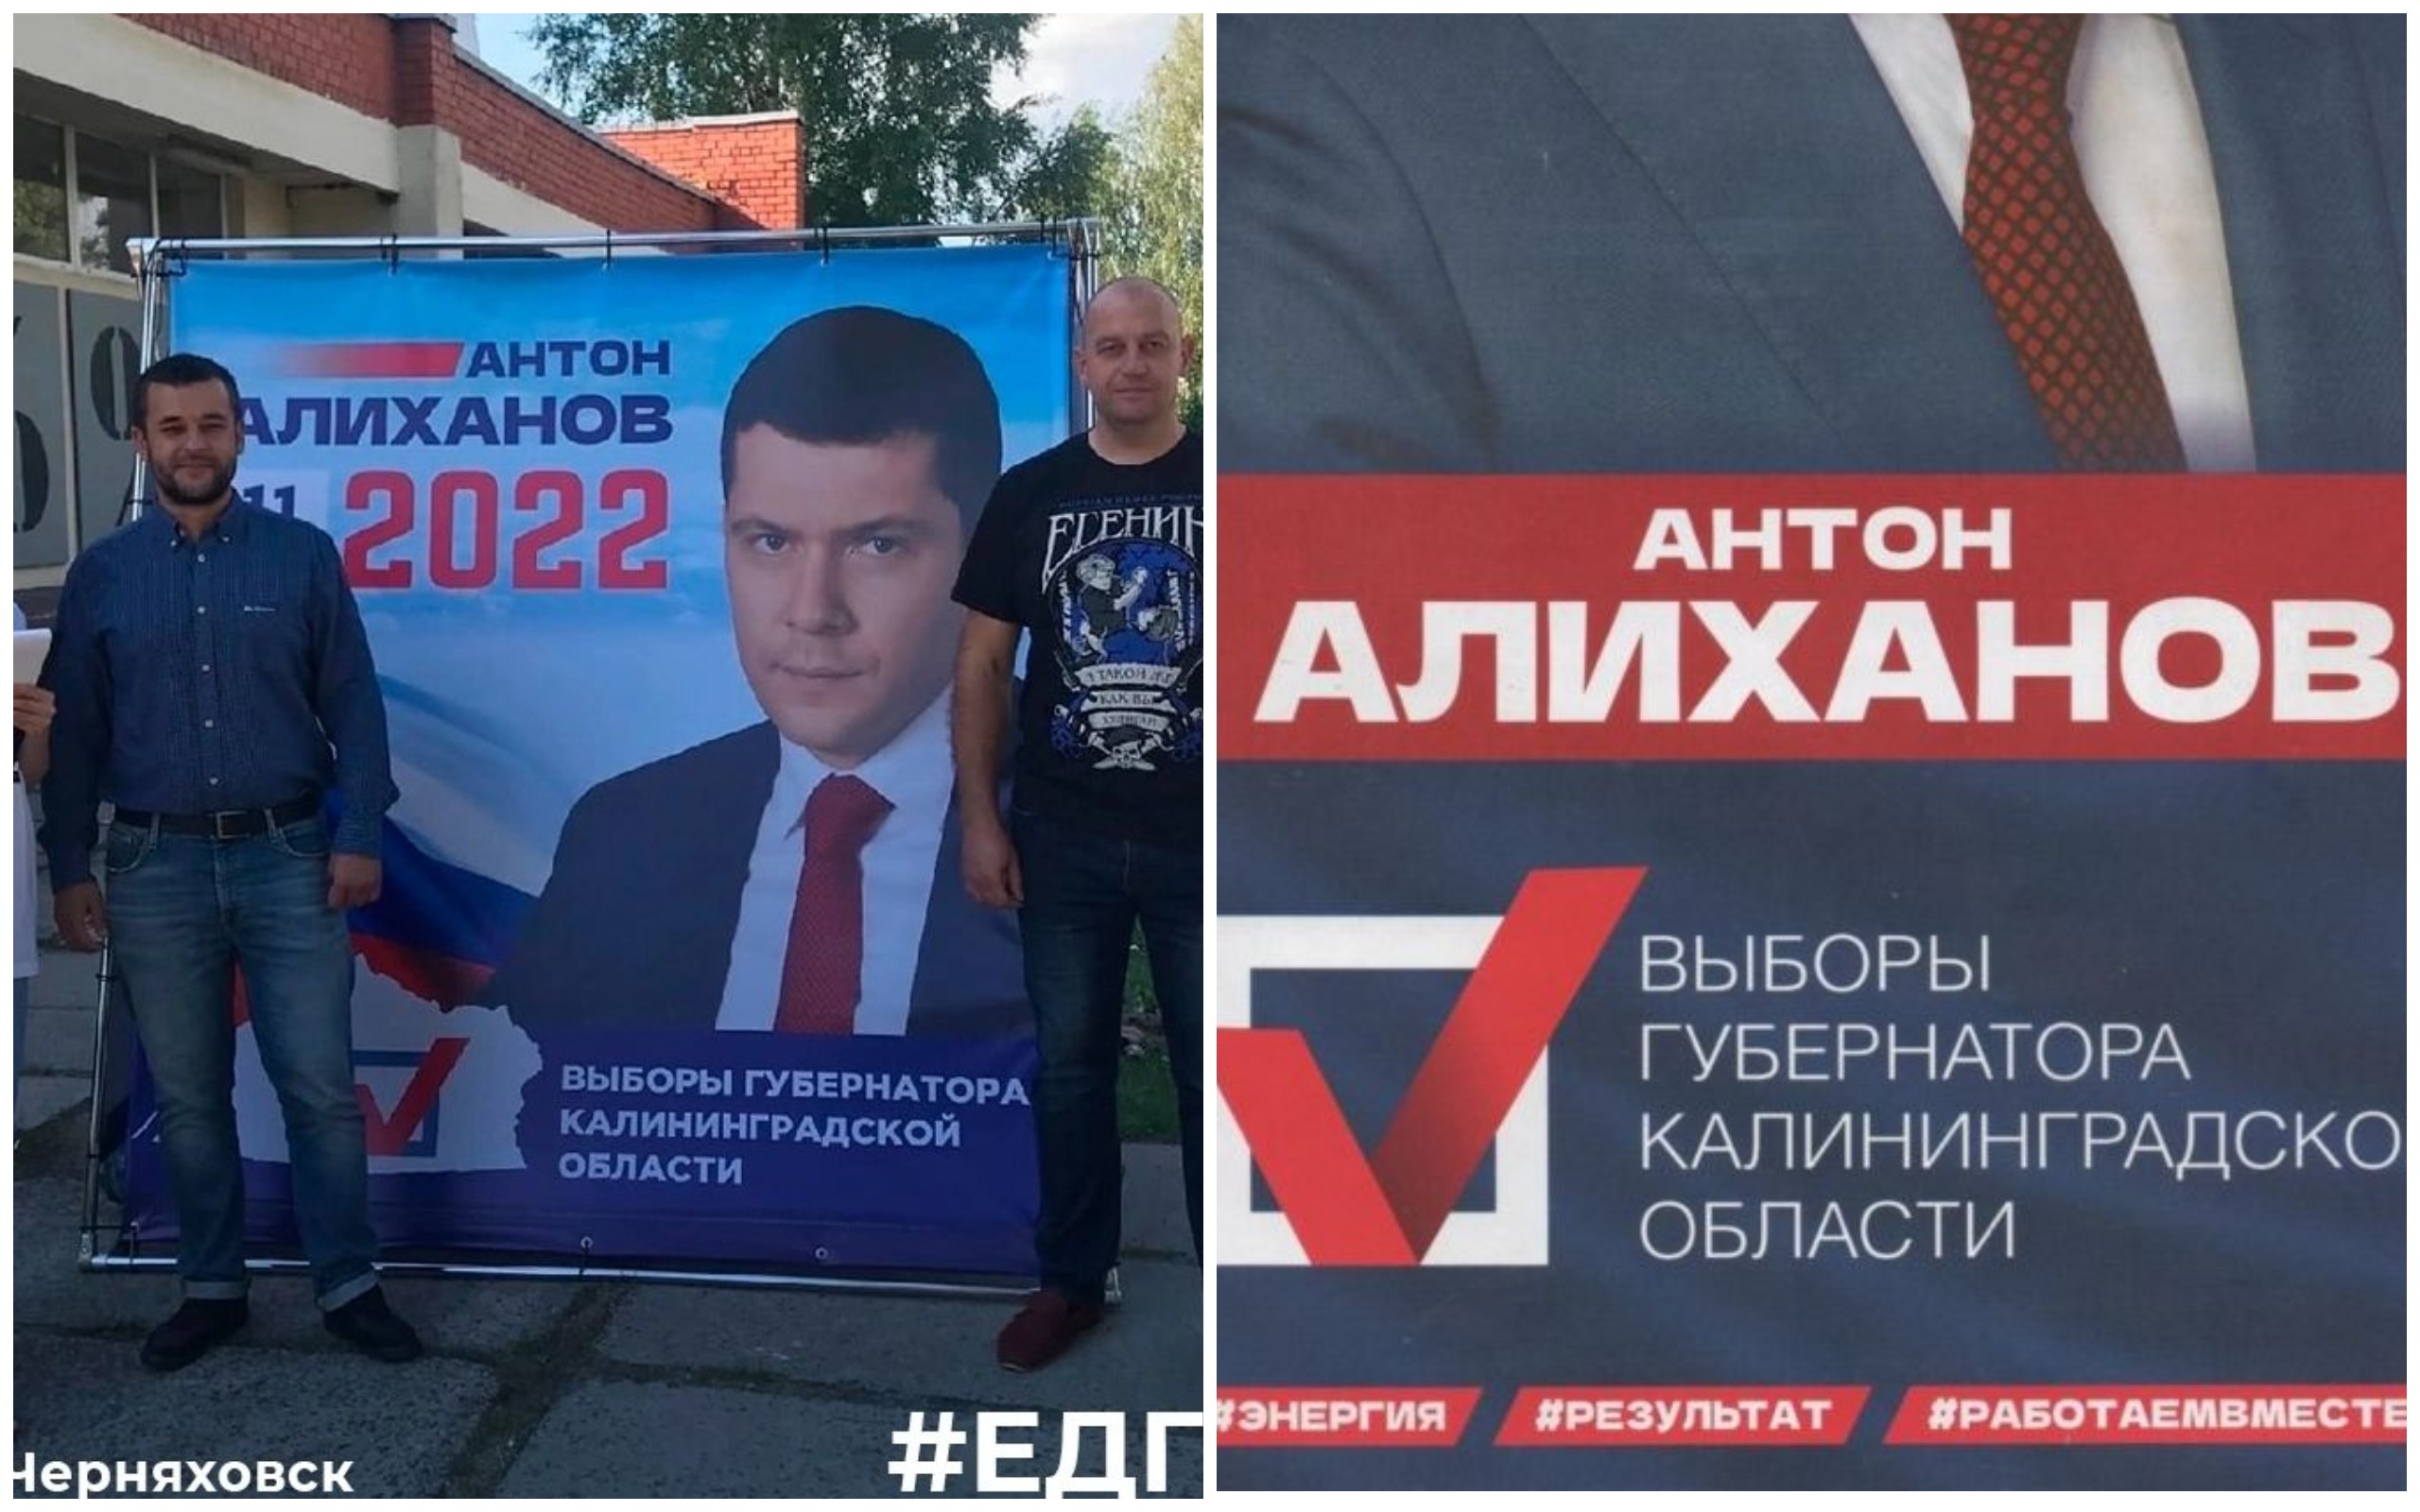 Действующий губернатор Калининградской области начал предвыборную агитацию без слоганов